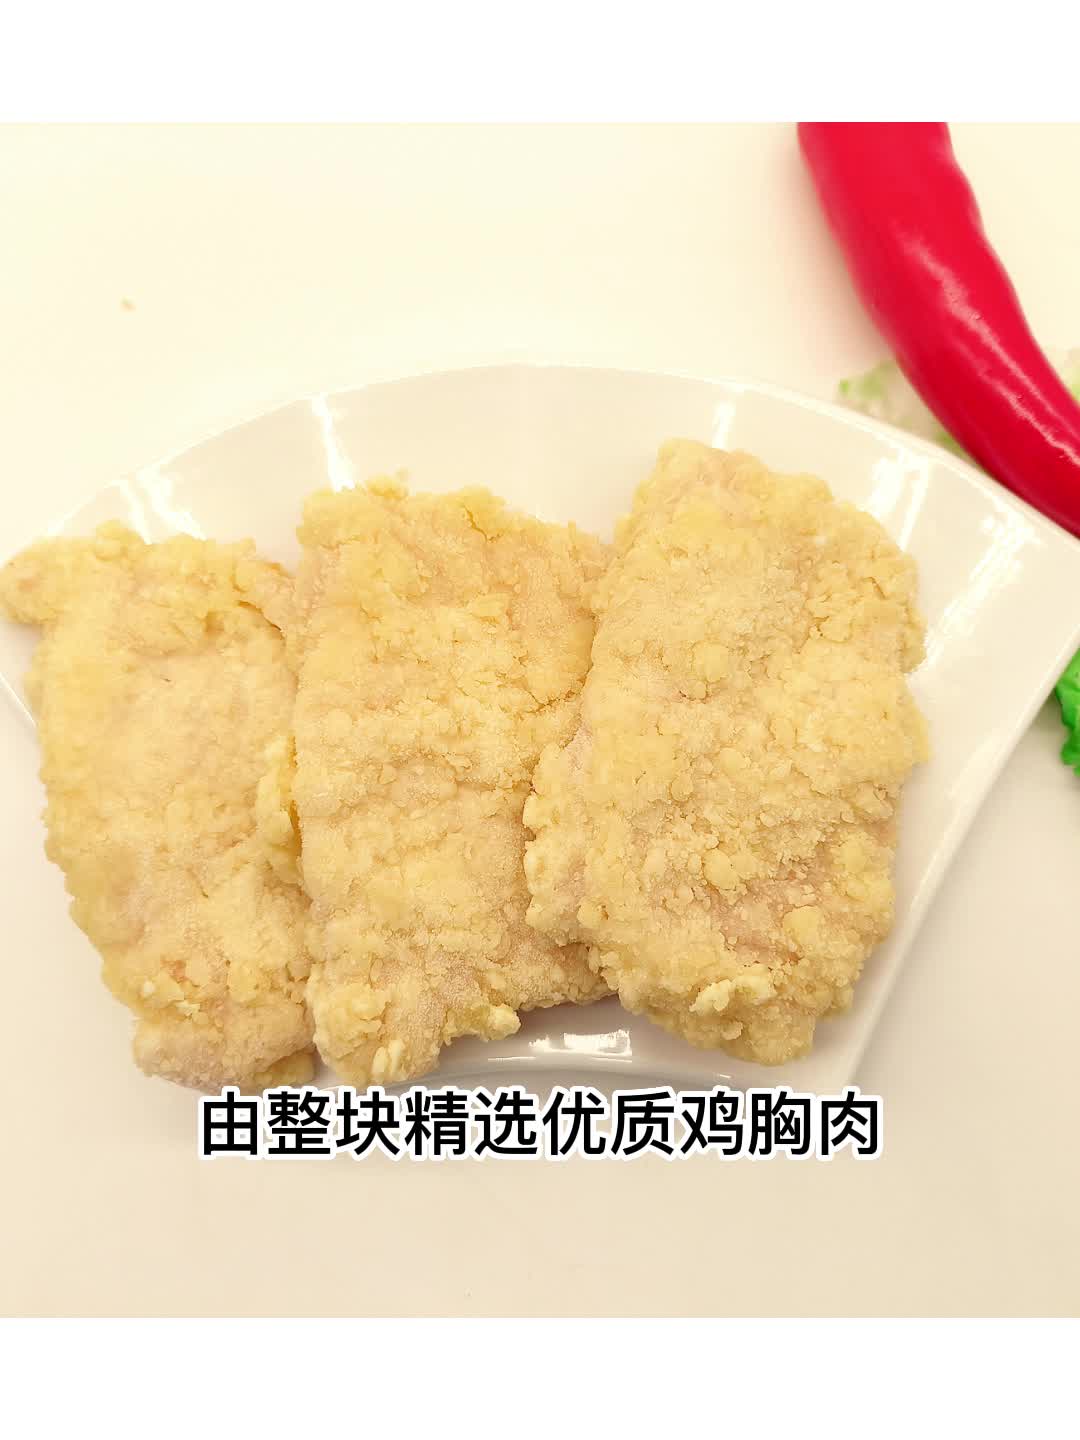 卡兹脆鸡排商用批发价格便宜广东省内包邮